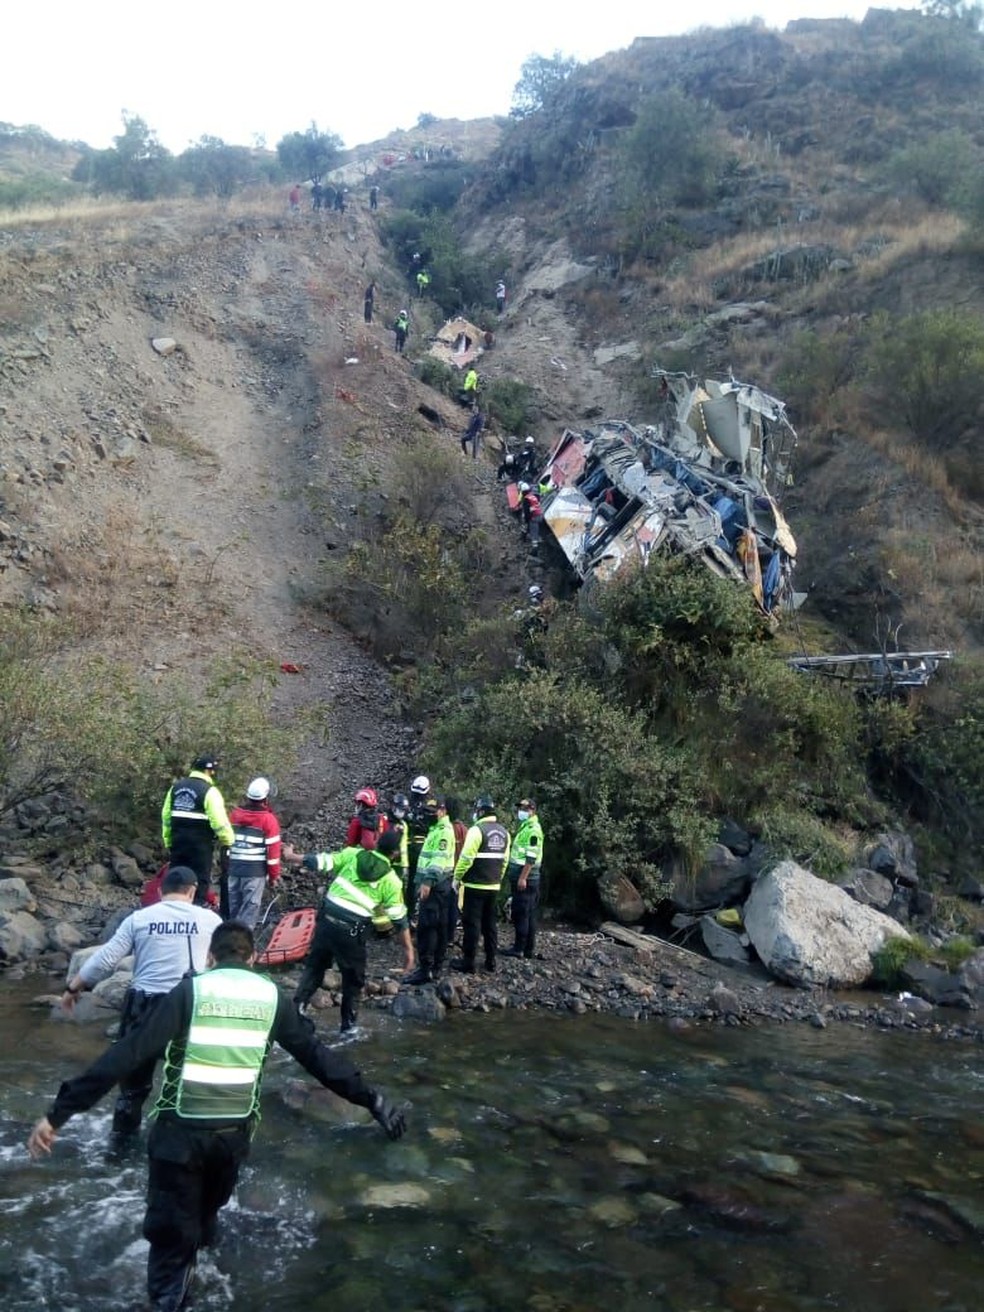 Equipes de resgate atuam em acidente de ônibus no Peru em 31 de agosto de 2021 — Foto: Reprodução/Ministério do Interior